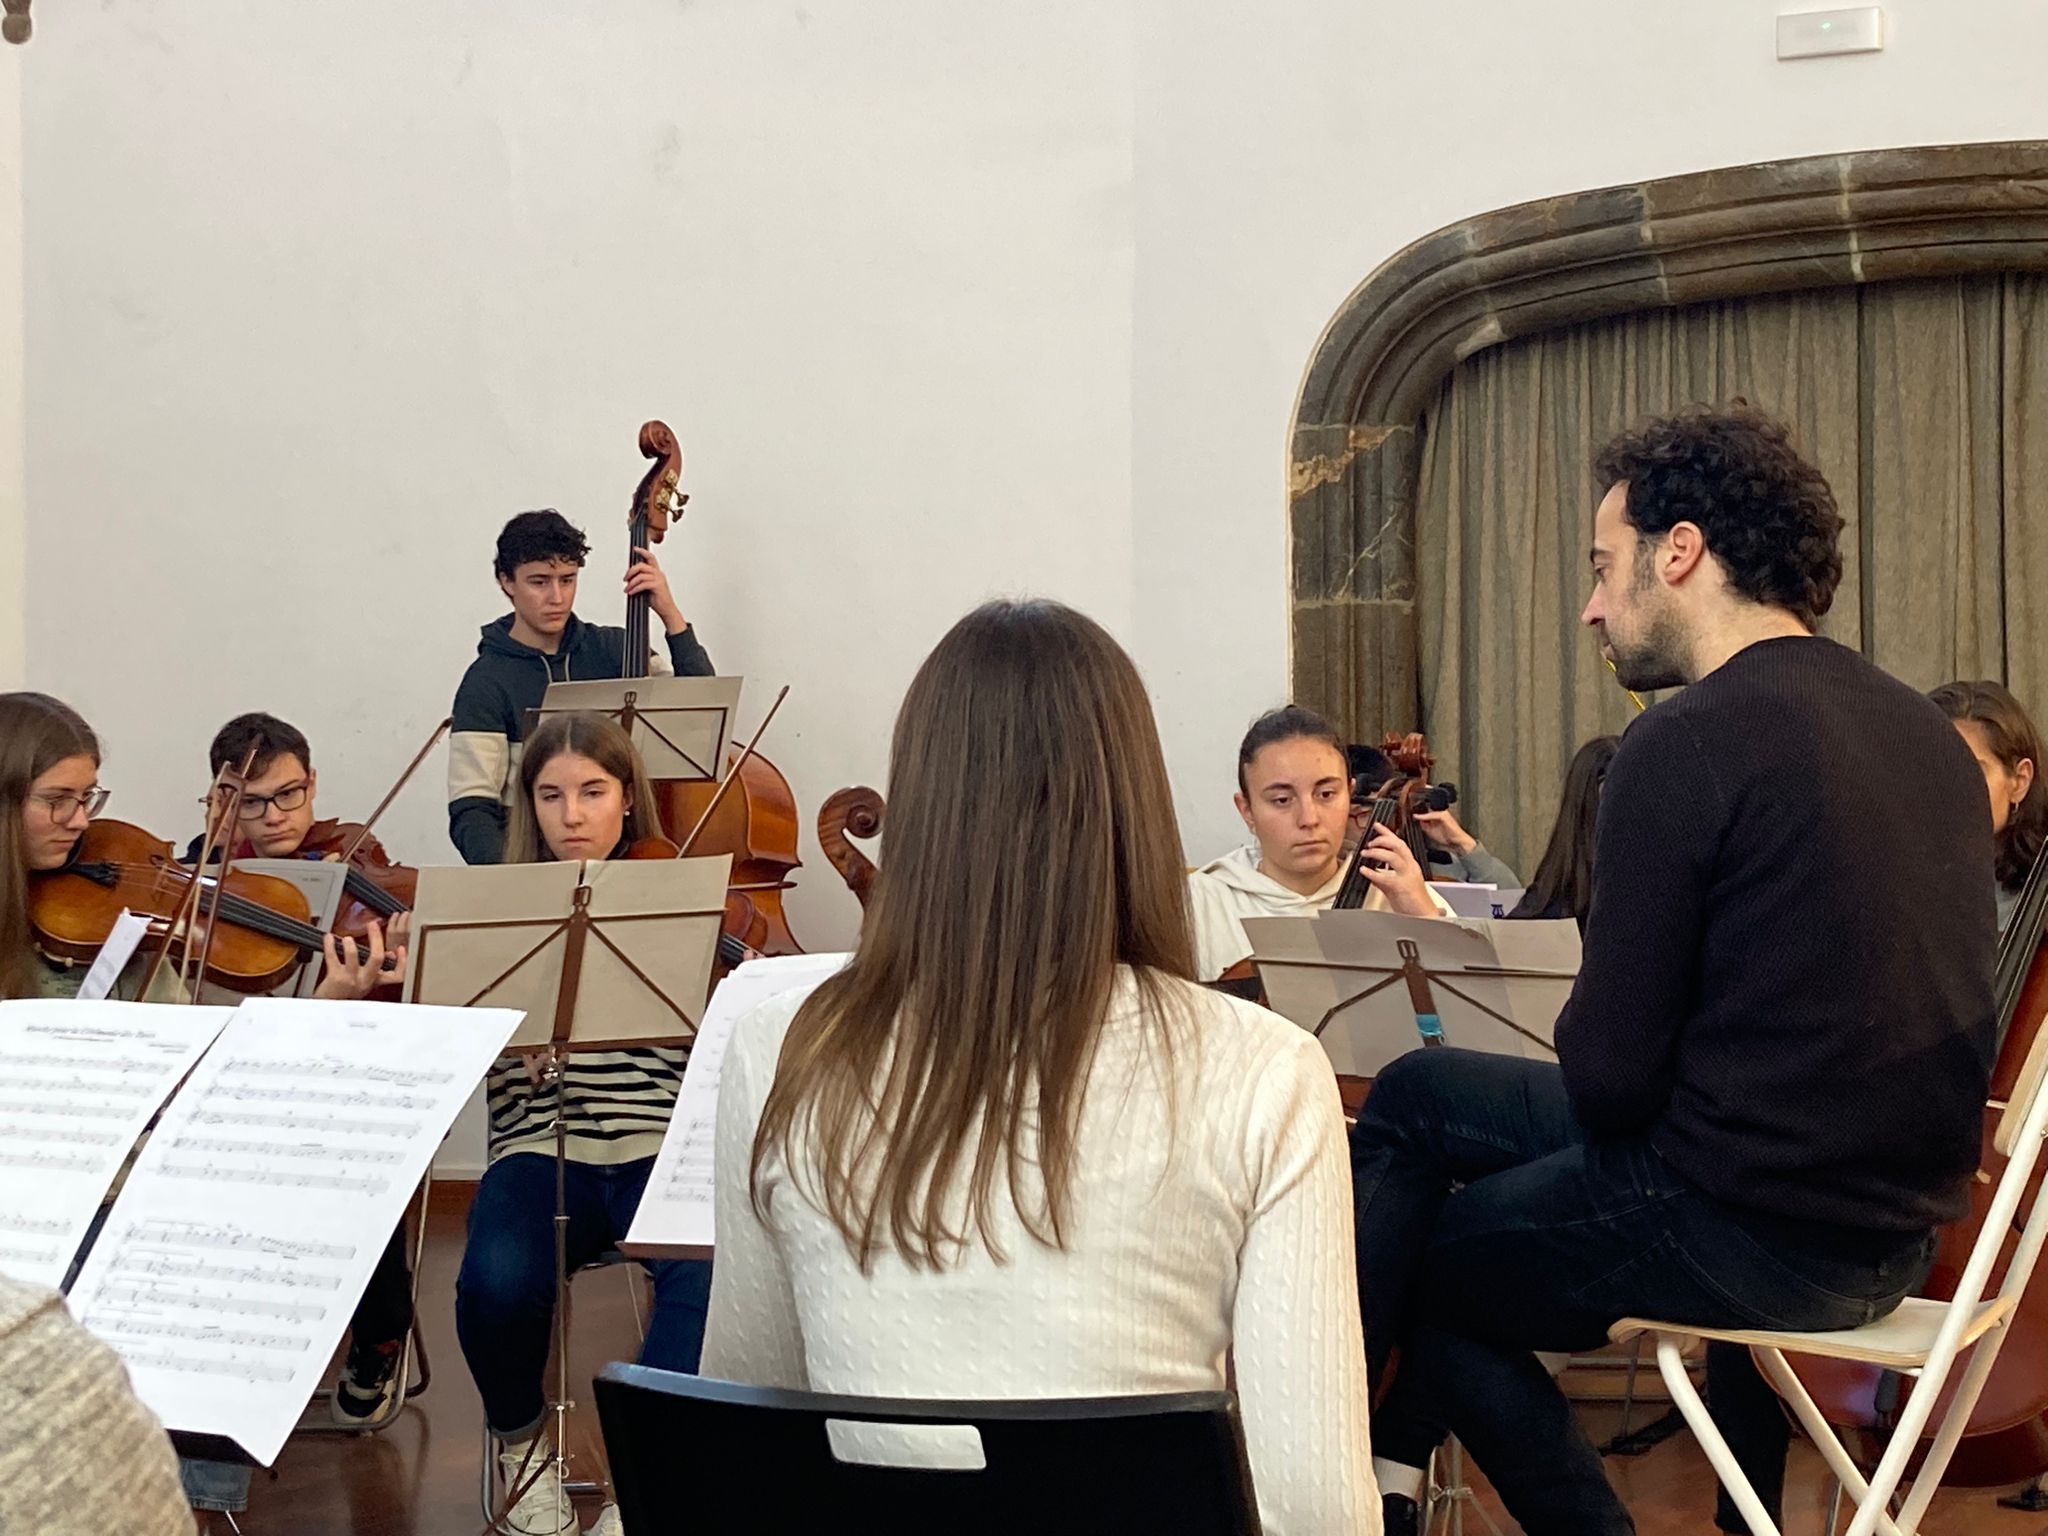 Primer assaig del Projecte Simfònic amb l'alumnat de l'Institut de Música d'Andorra la Vella i el Conservatori de Música dels Pirineus  